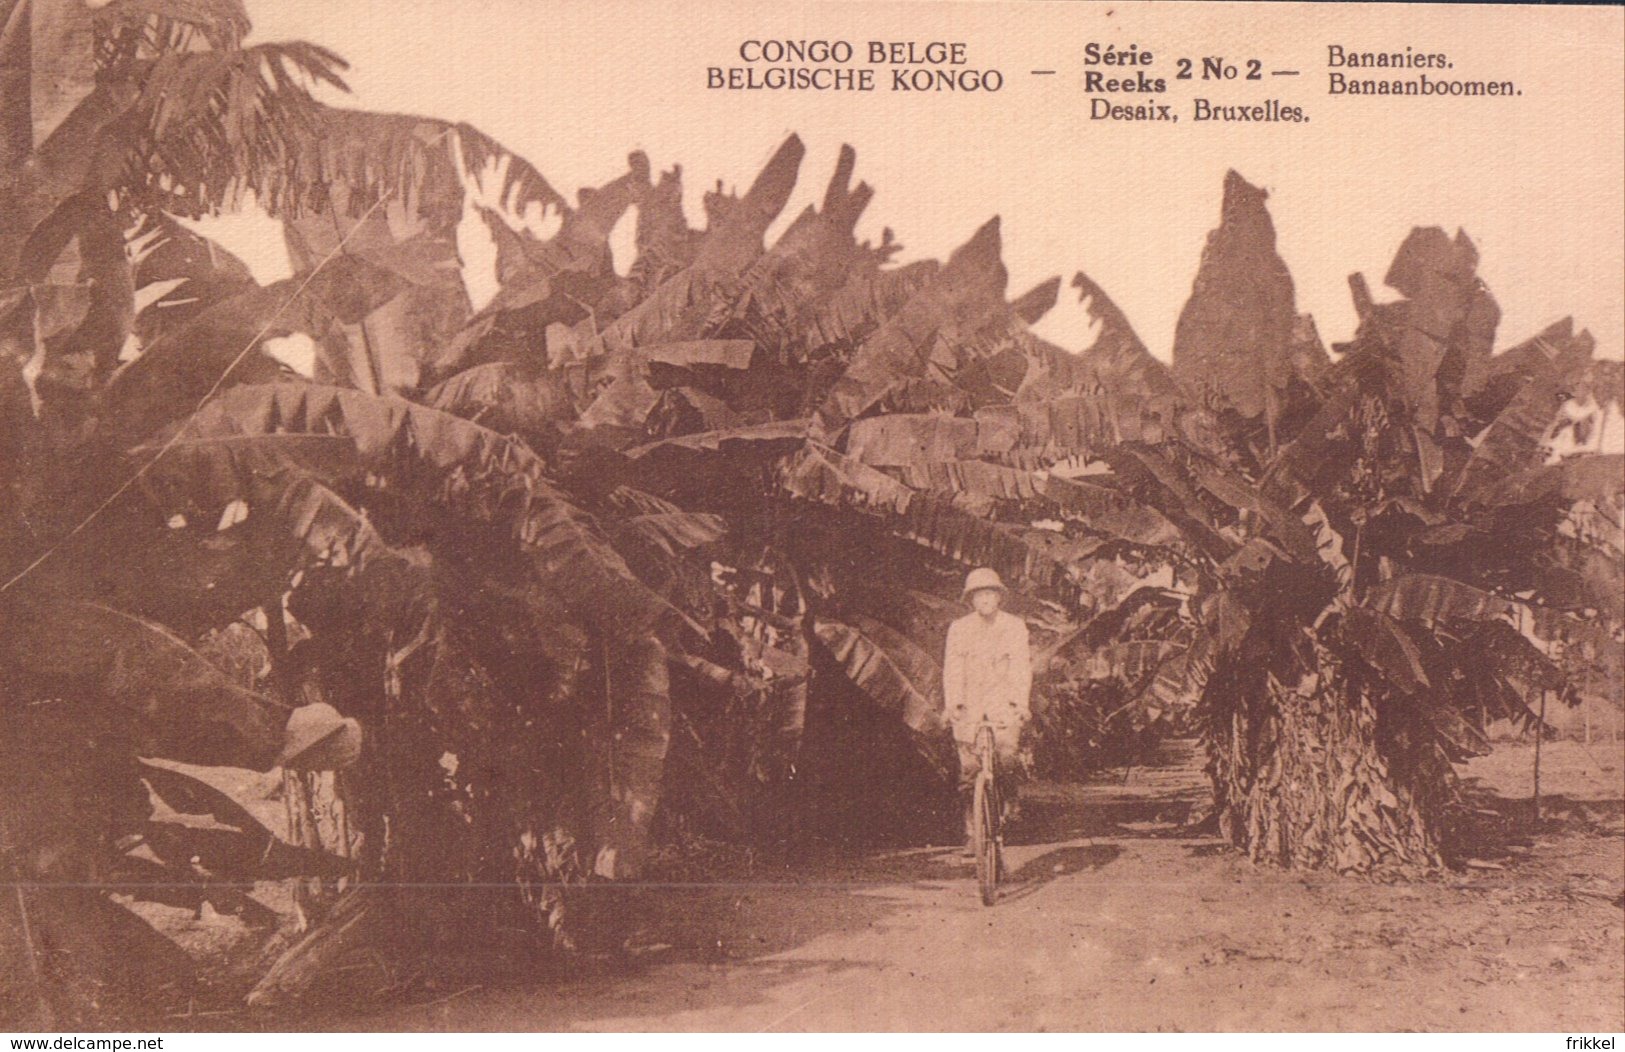 Bananiers Banaanboomen ( Congo Belge Belgisch Kongo ) - Congo Belge